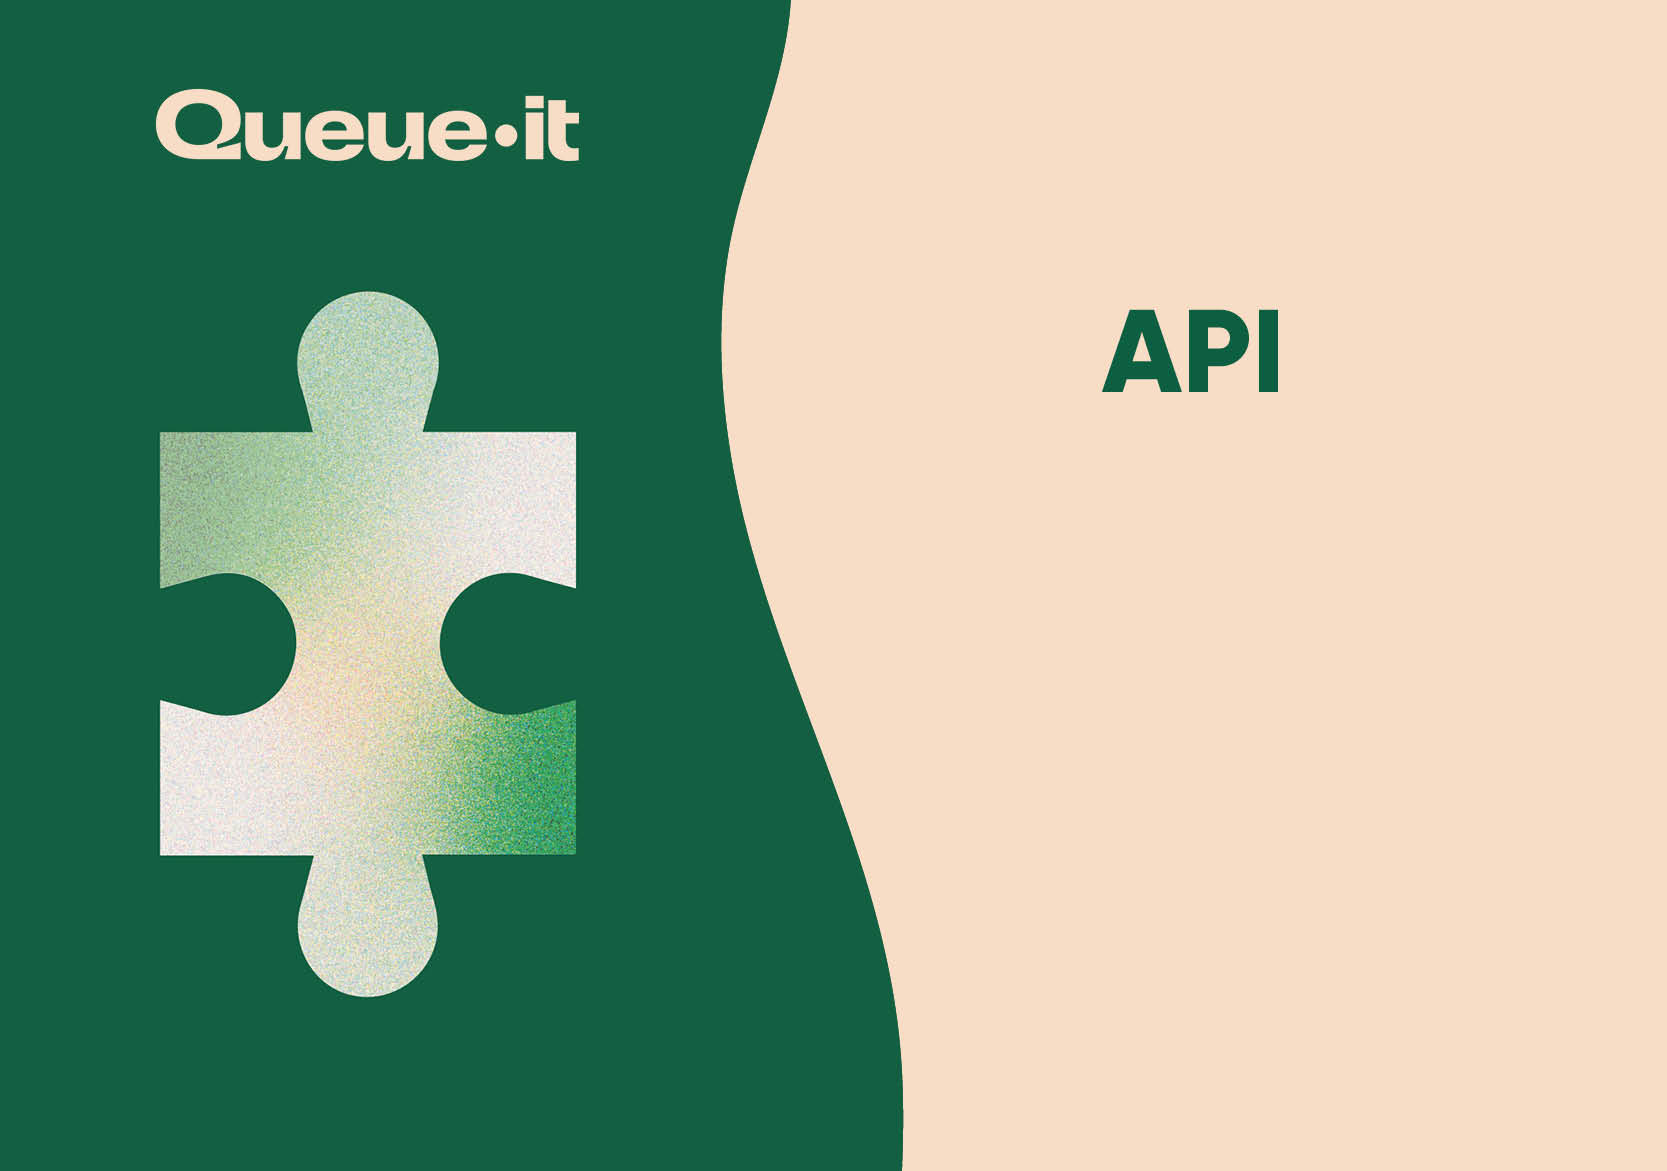 Queue-it API white paper